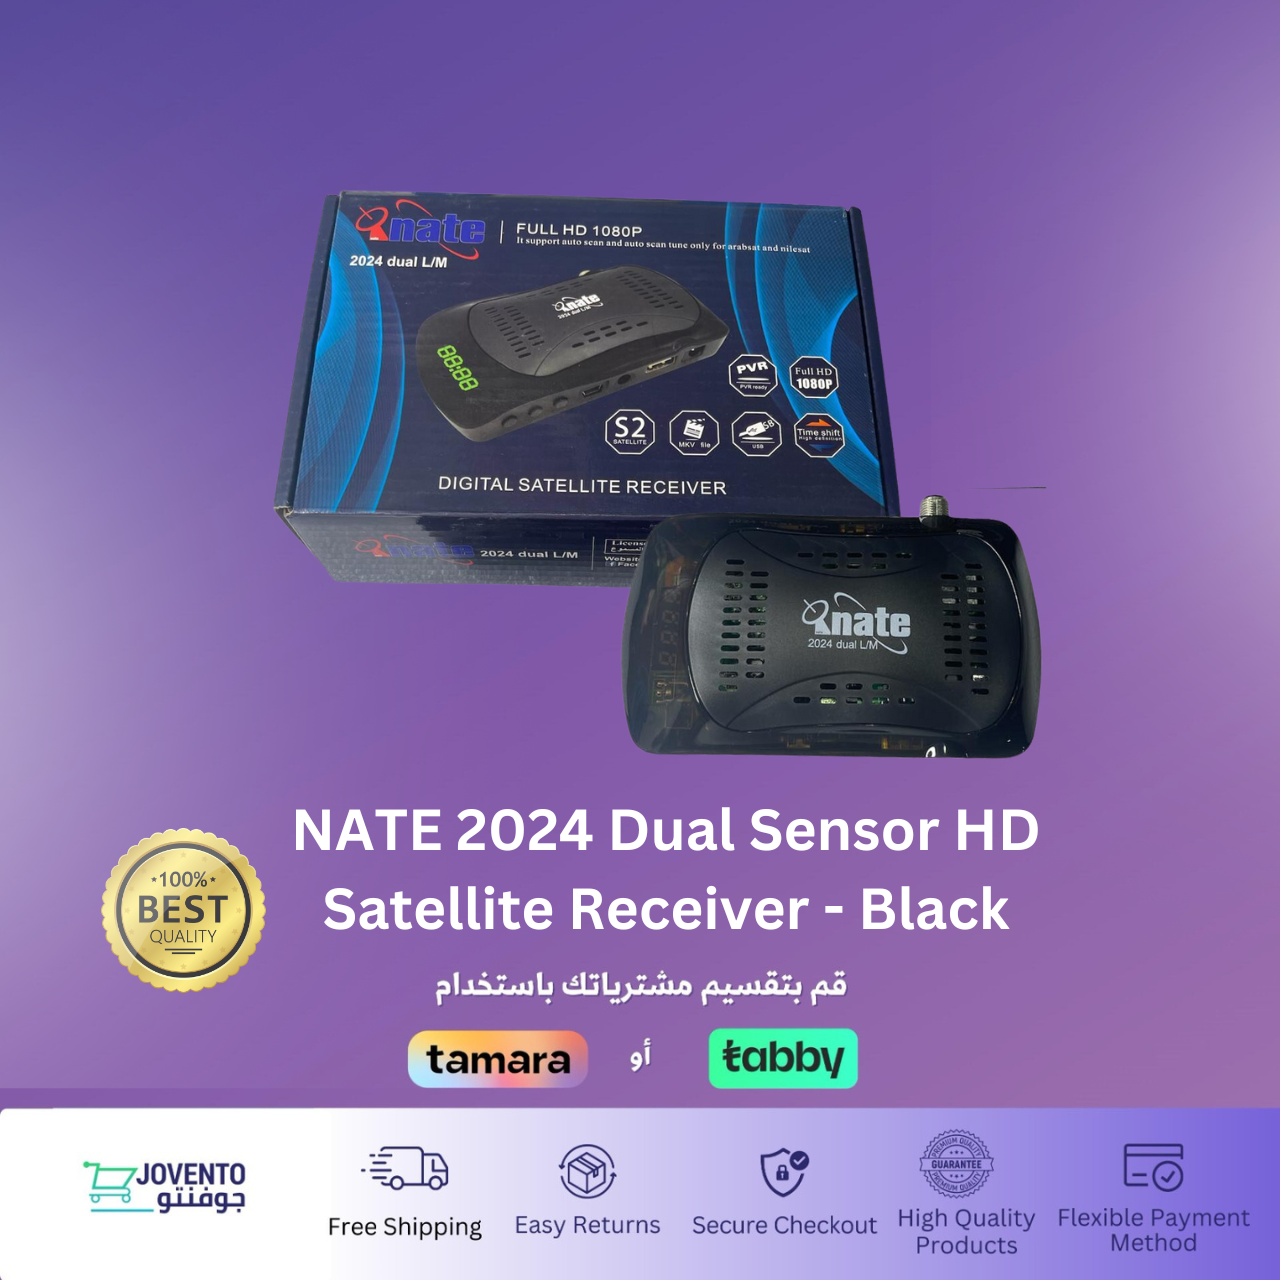 NATE 2024 Dual Sensor HD Satellite Receiver - Black